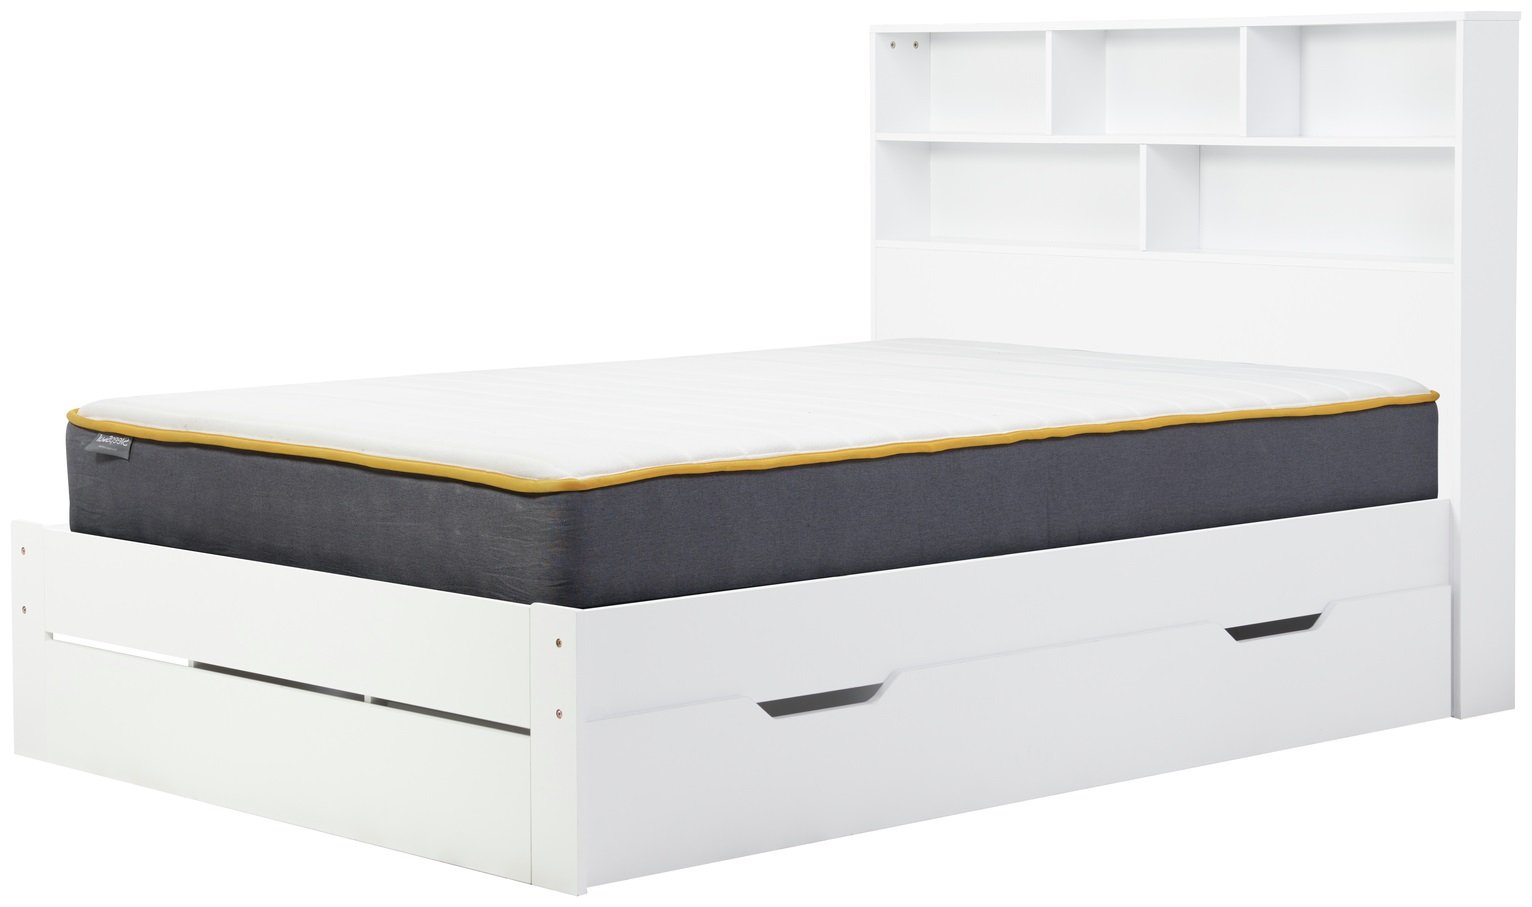 Birlea Alfie Double Wooden Storage Bed Frame - White